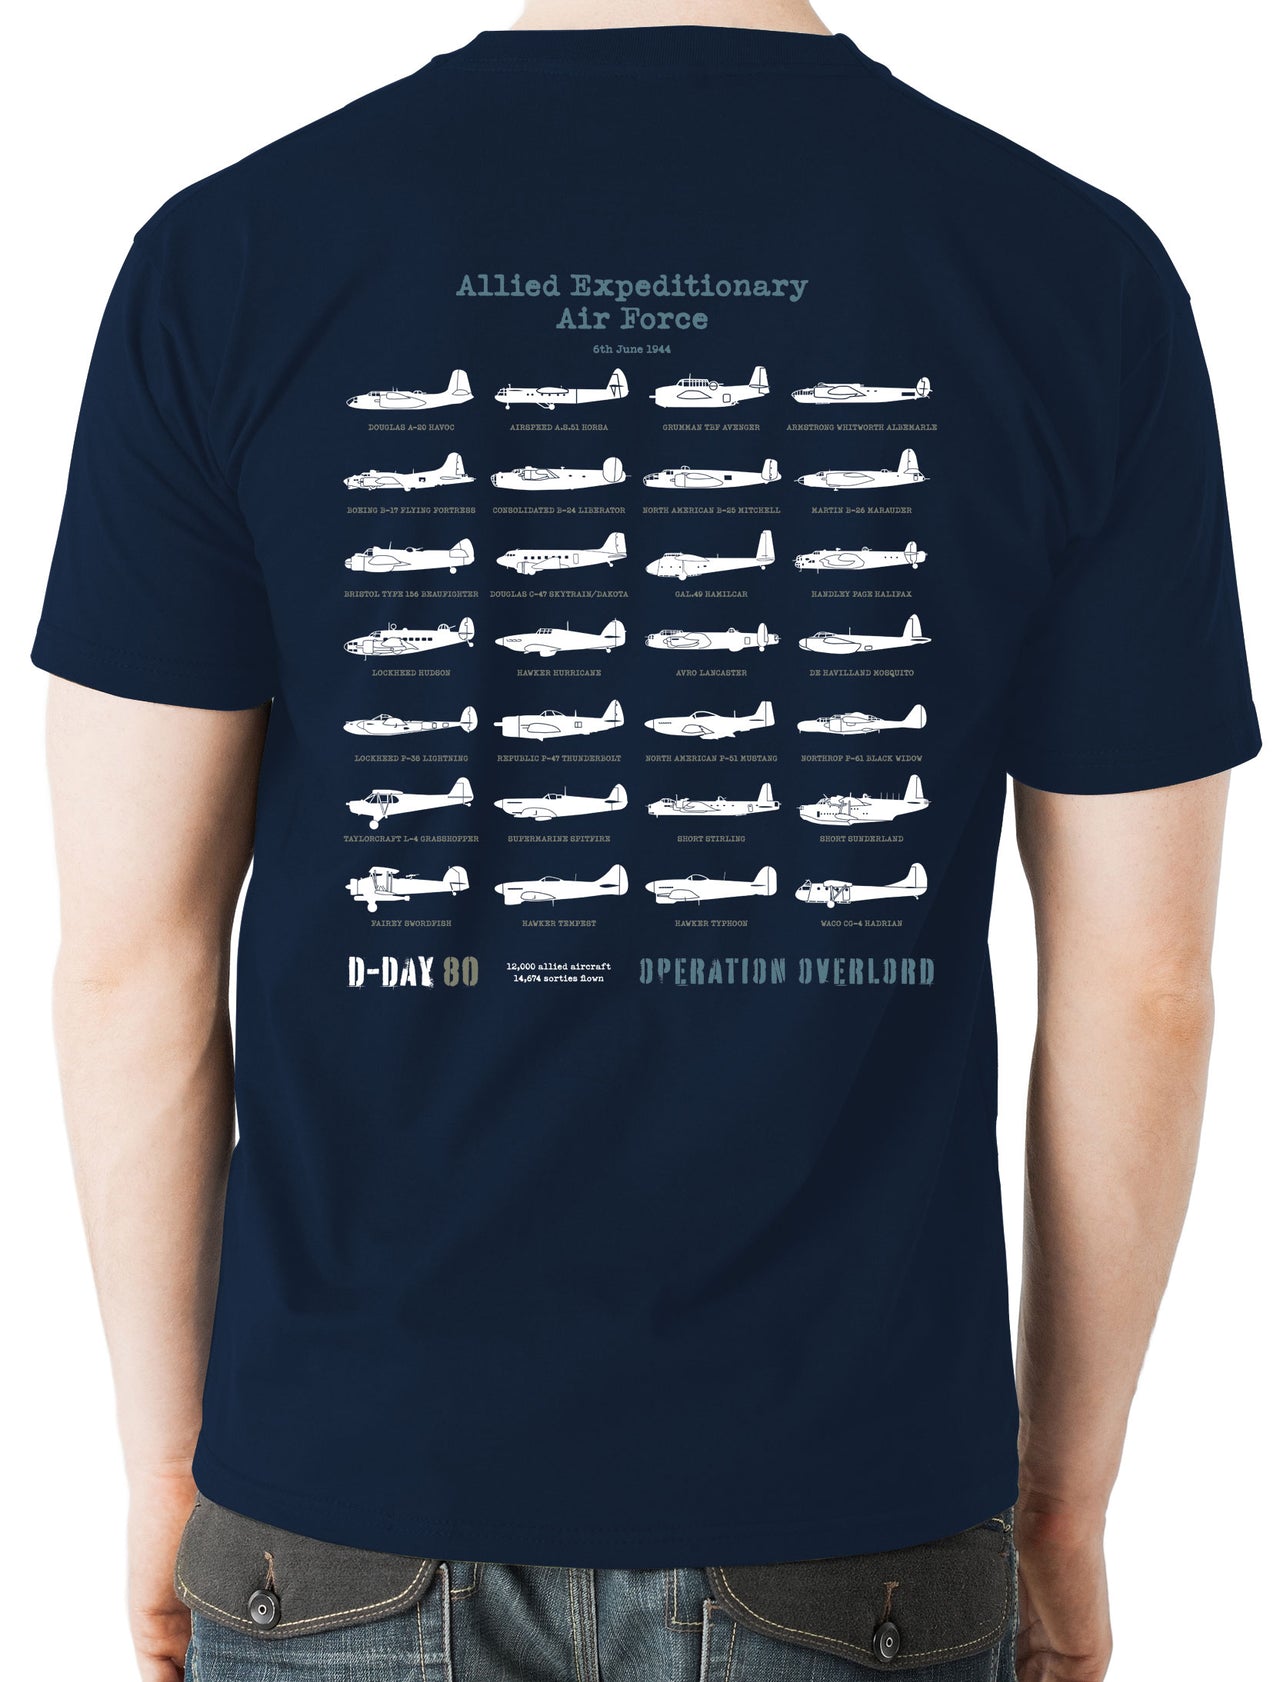 D-Day Beaufighter - T-shirt